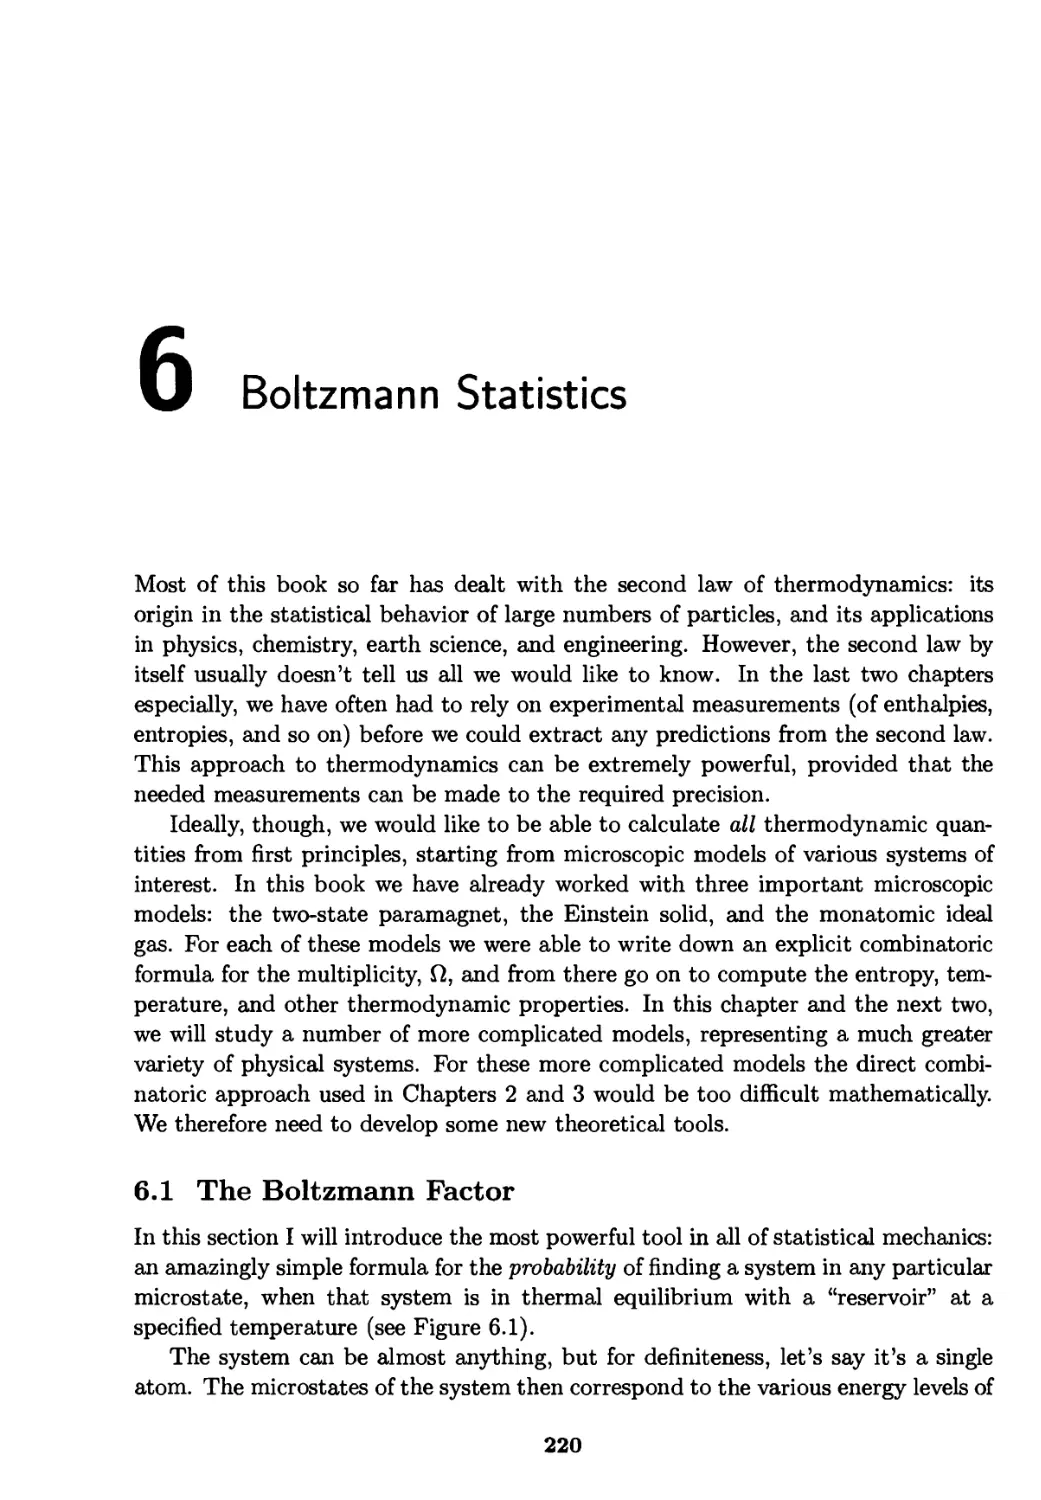 Part III: Statistical Mechanics
Chapter 6. Boltzmann Statistics